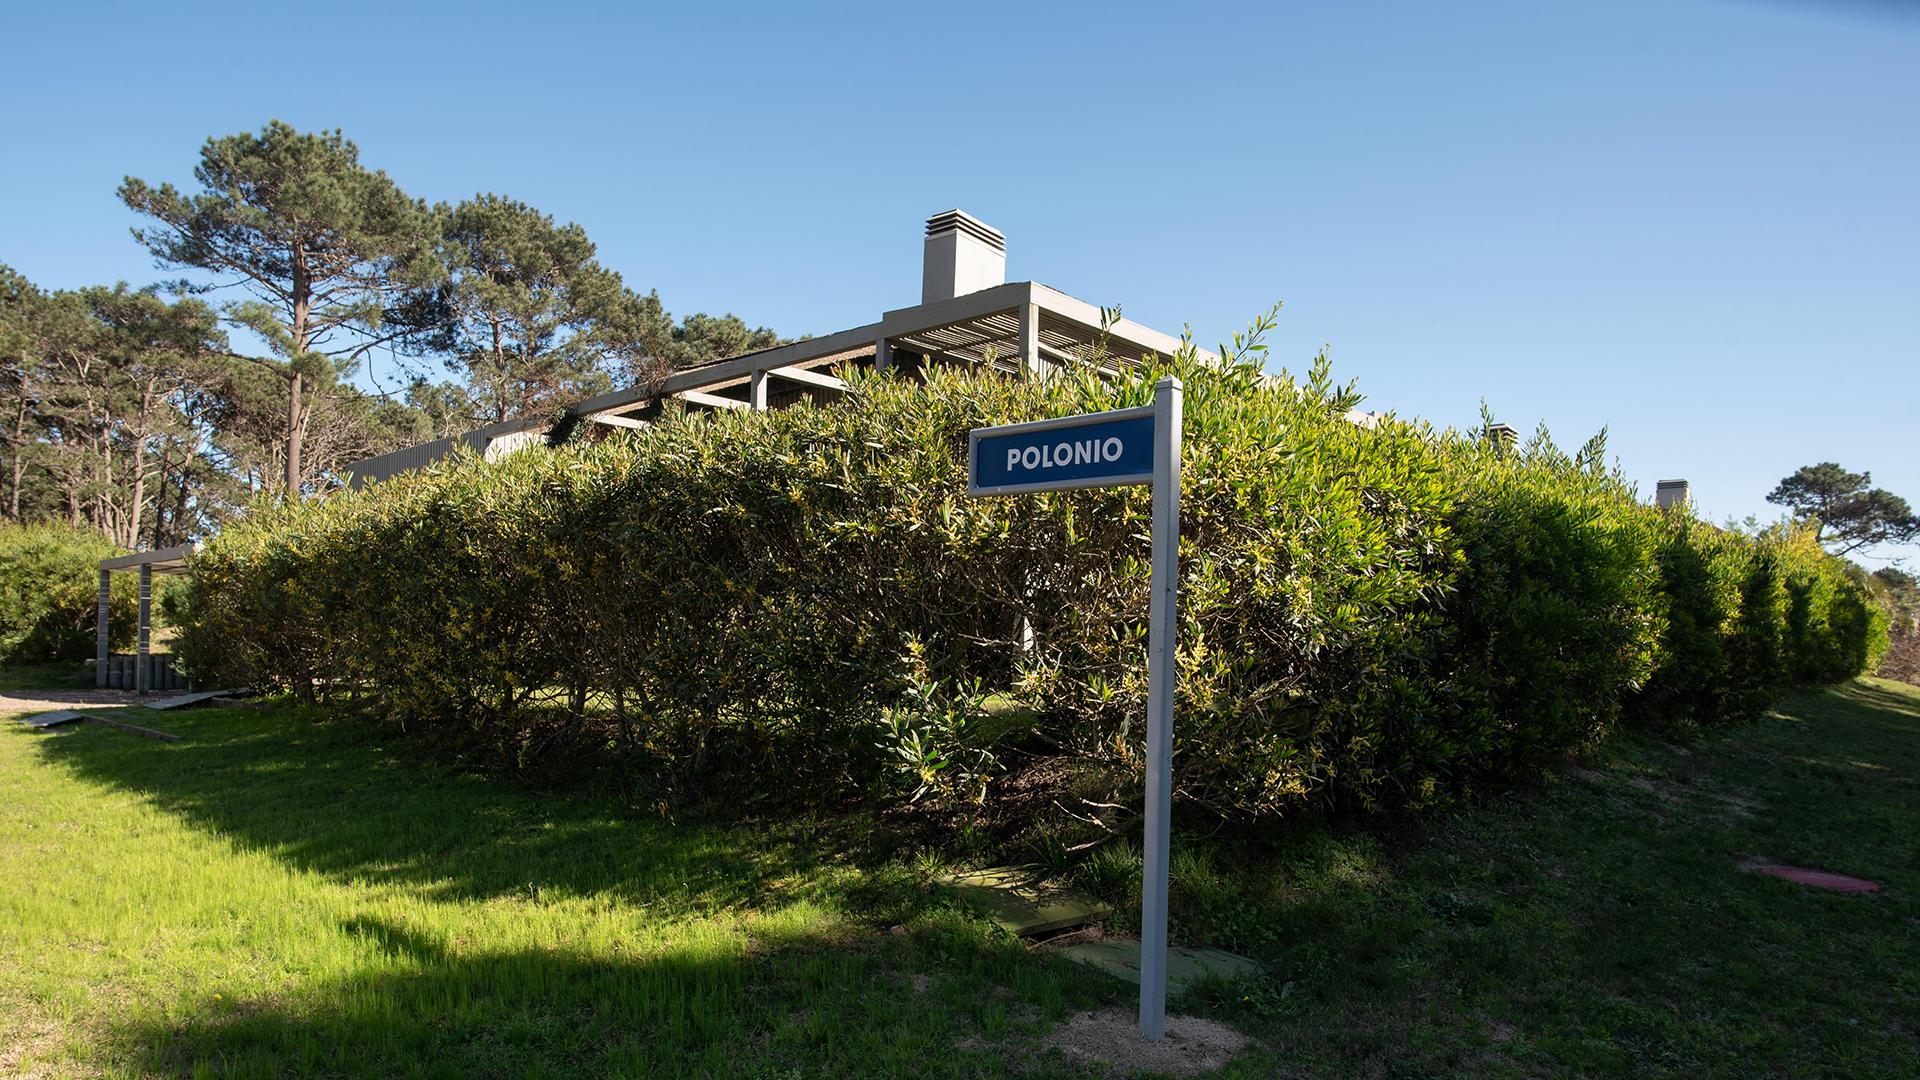 Summer House Rental located in Jose Ignacio, Punta del Este, Uruguay, listed by Curiocity Villas.